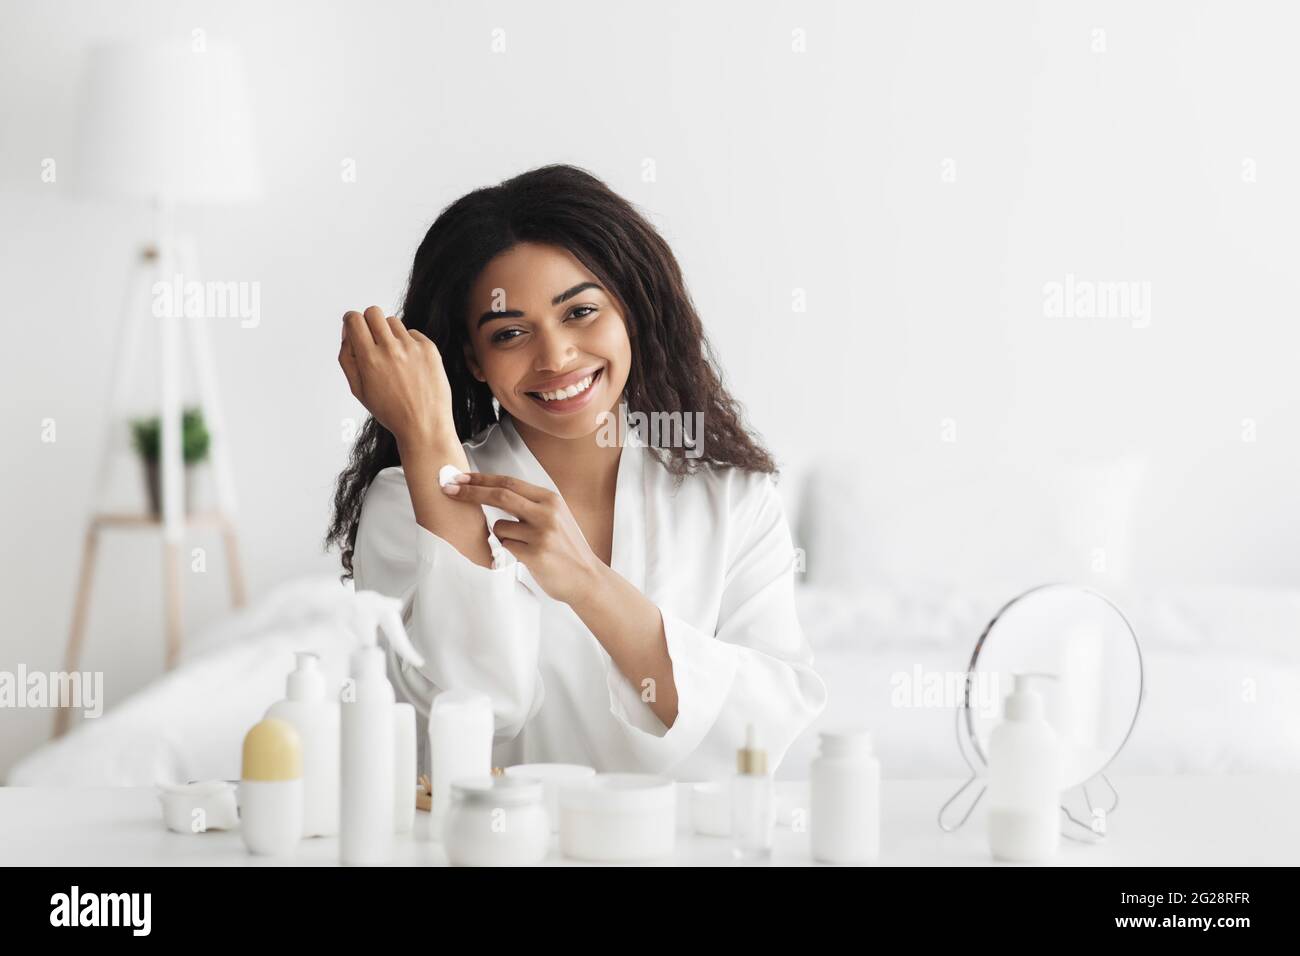 Cosméticos para el cuidado de la piel. Feliz mujer afroamericana aplicando crema de manos, hidratando la piel después del baño Foto de stock